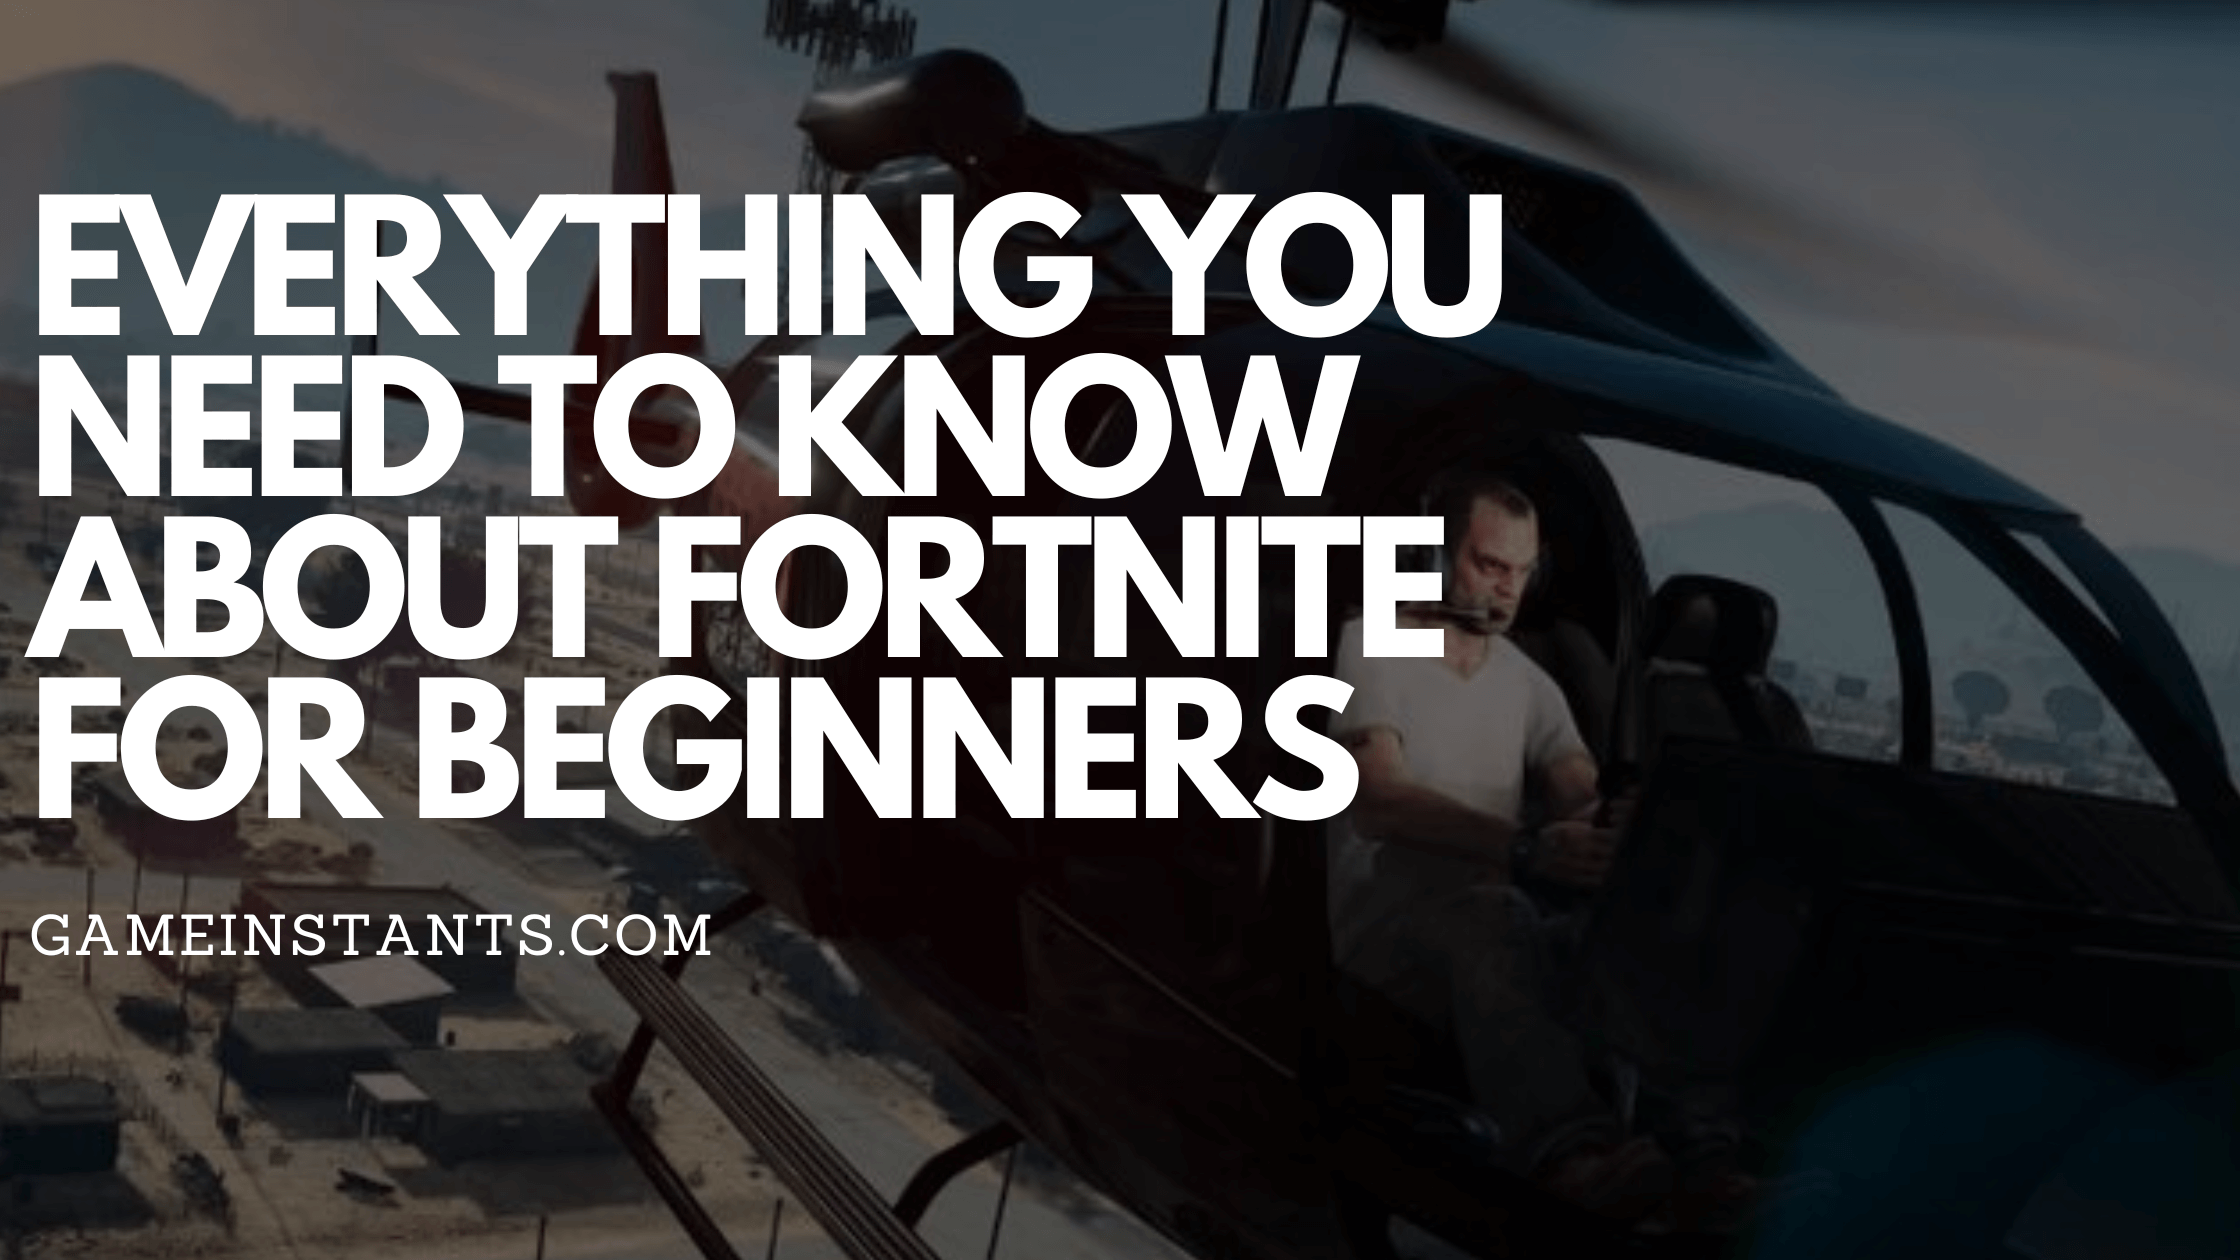 Fortnite Guide for Beginners